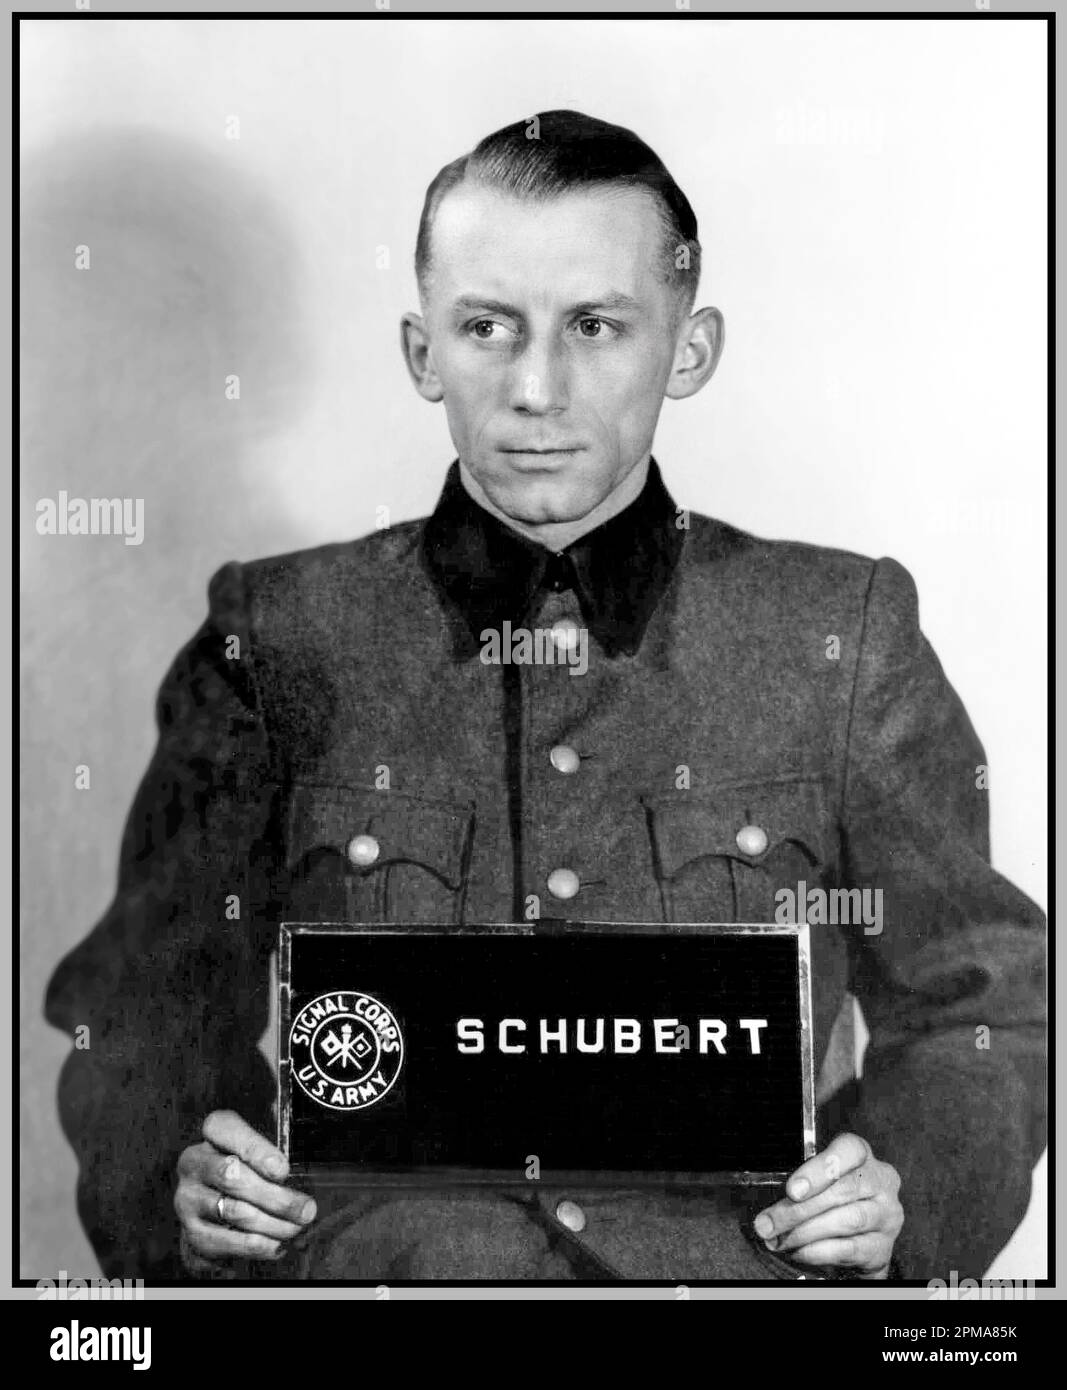 Heinz Hermann Schubert Guerre nazie procès Einsatzgruppen (27 août 1914 – 17 août 1987) était un officier SS allemand nazi. Il a occupé le grade d'Obersturmführer (l'équivalent de 1st lieutenants). Il a été condamné à mort lors du procès Einsatzgruppen de Nuremberg en 1948, qui a été commué par la suite à 10 ans d'emprisonnement. Banque D'Images